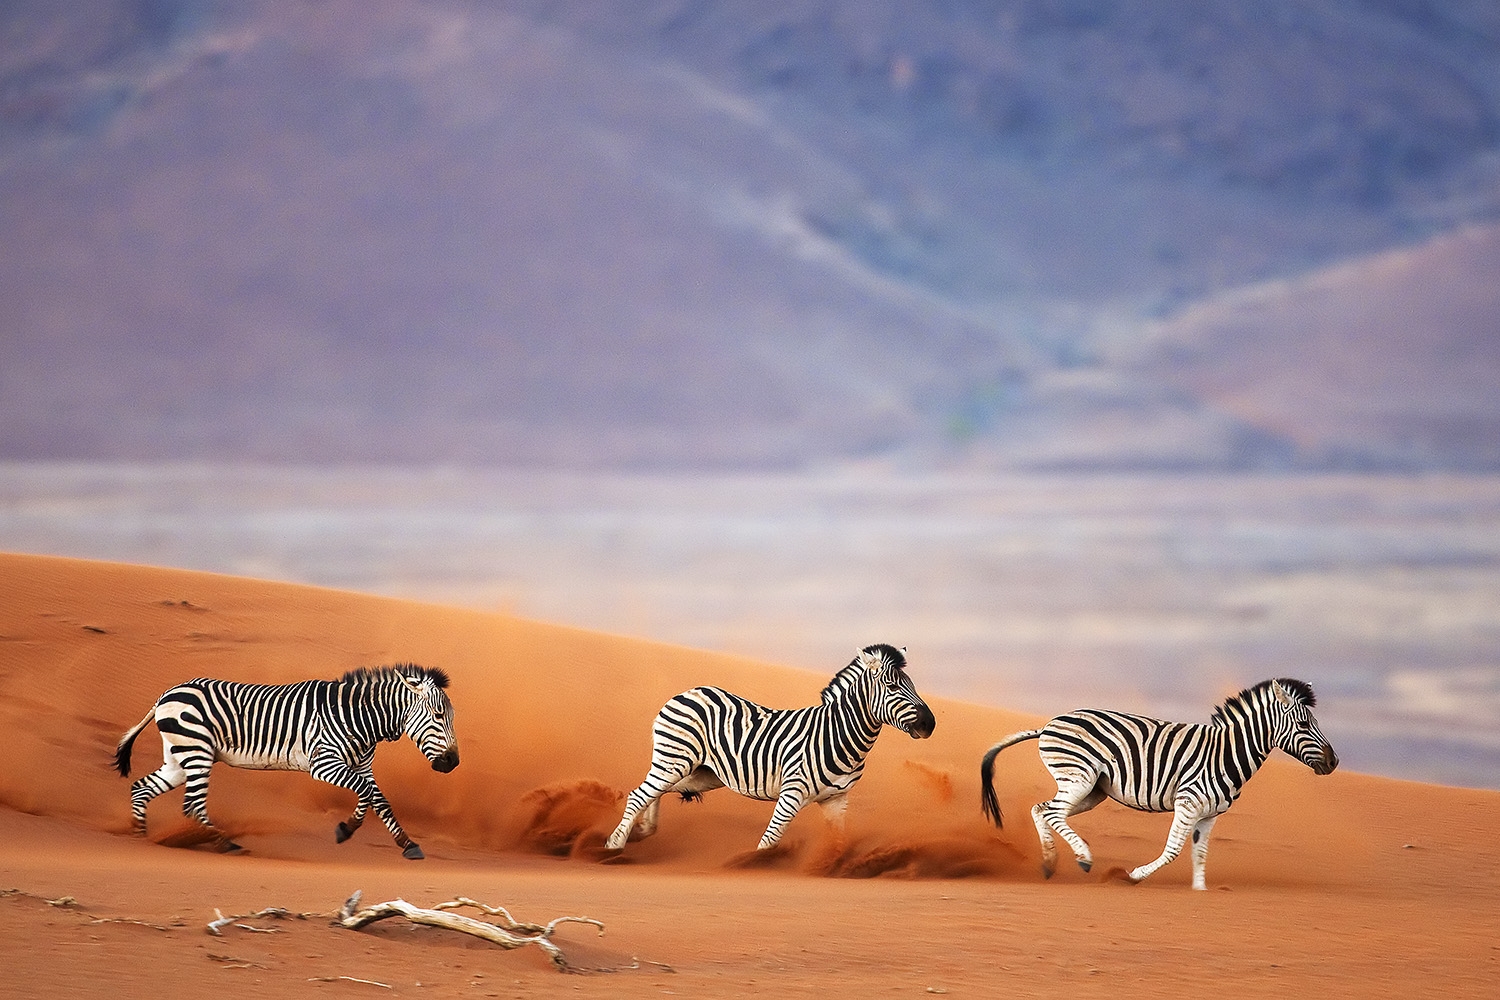 Zebras running across sand dune